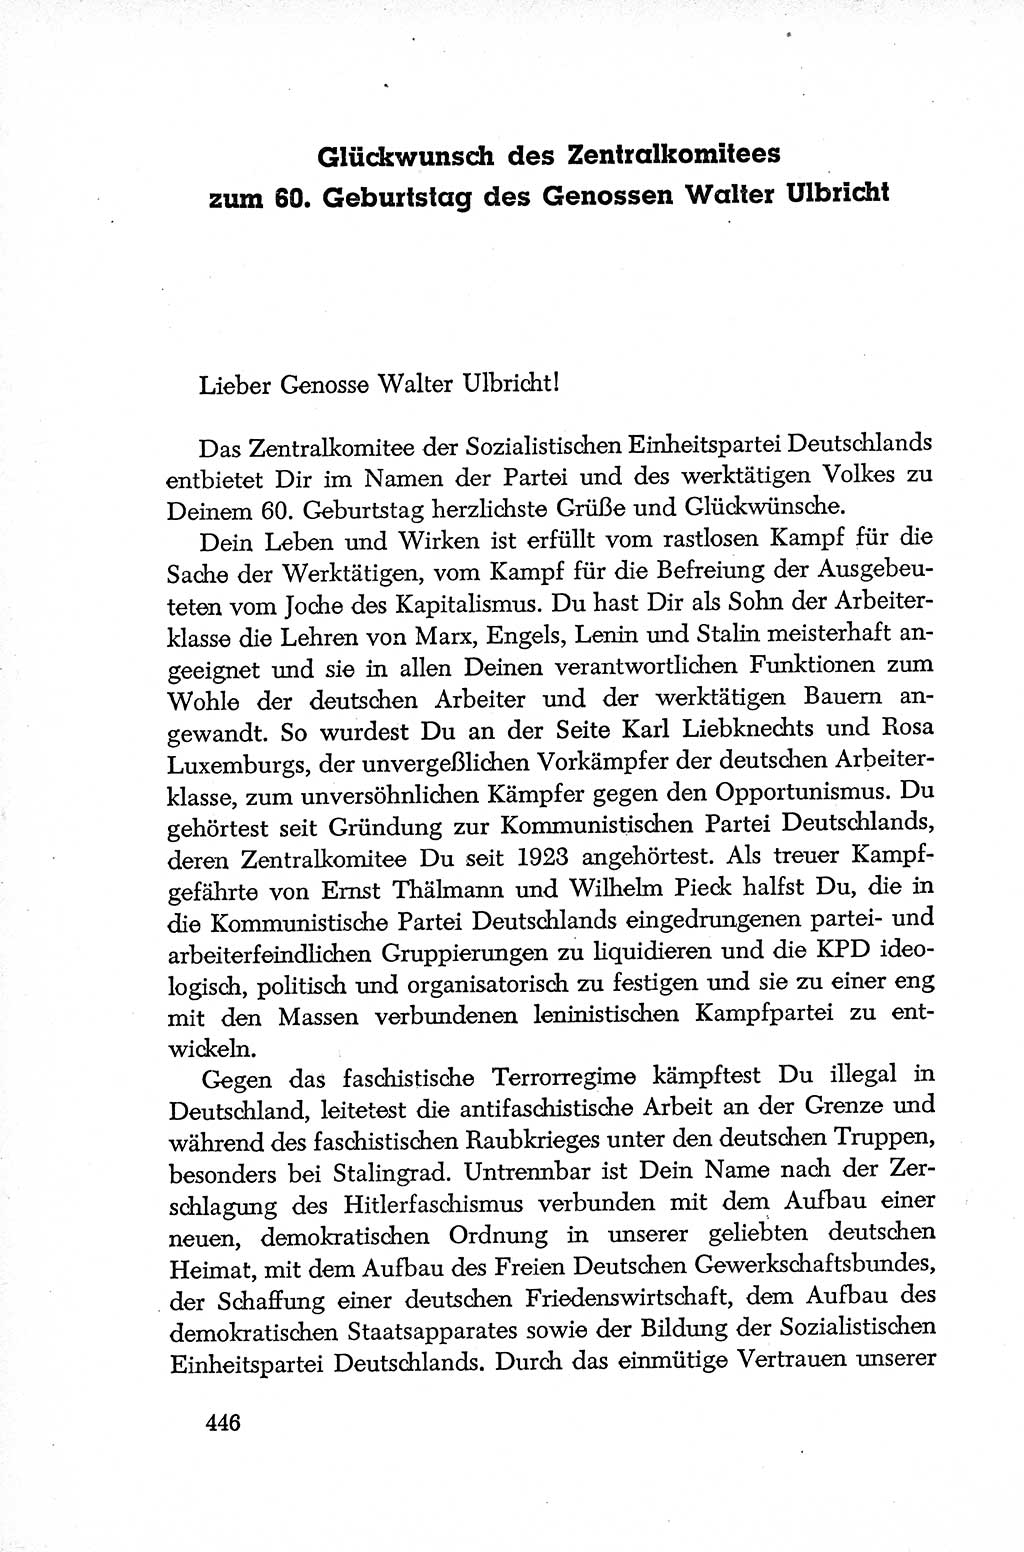 Dokumente der Sozialistischen Einheitspartei Deutschlands (SED) [Deutsche Demokratische Republik (DDR)] 1952-1953, Seite 446 (Dok. SED DDR 1952-1953, S. 446)